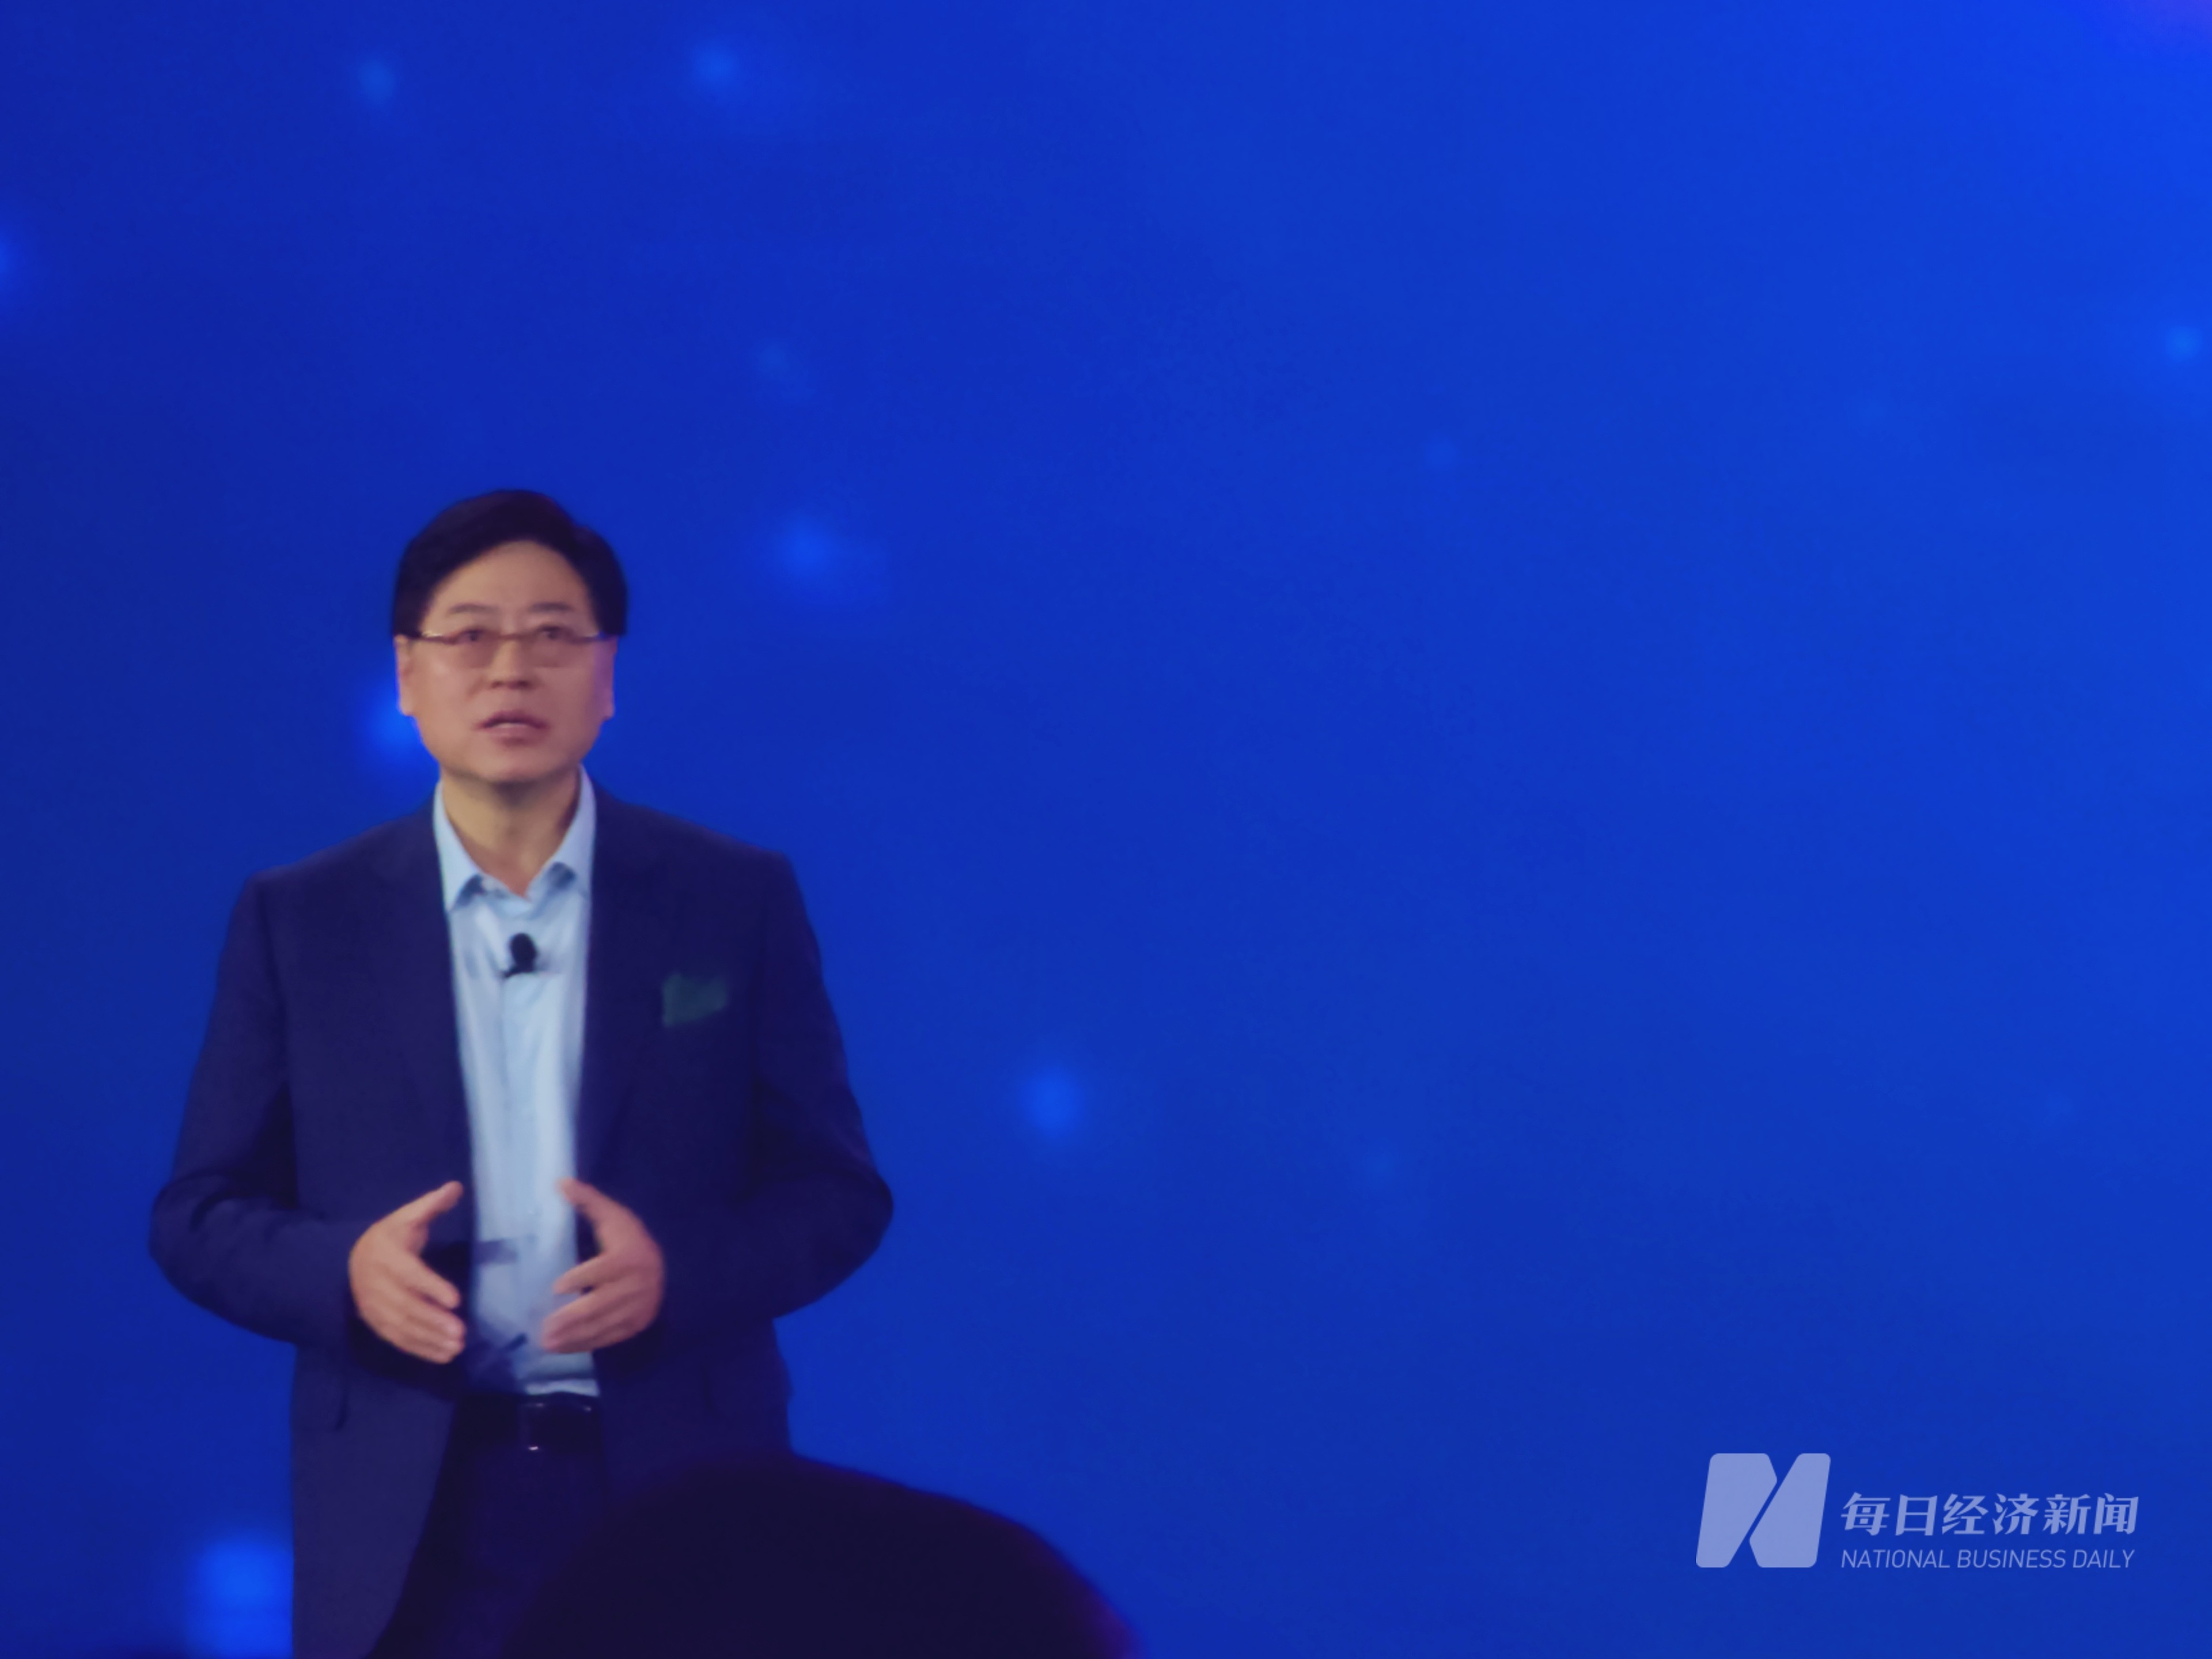 联想集团董事长杨元庆：人工智能的下半场是从技术突破进